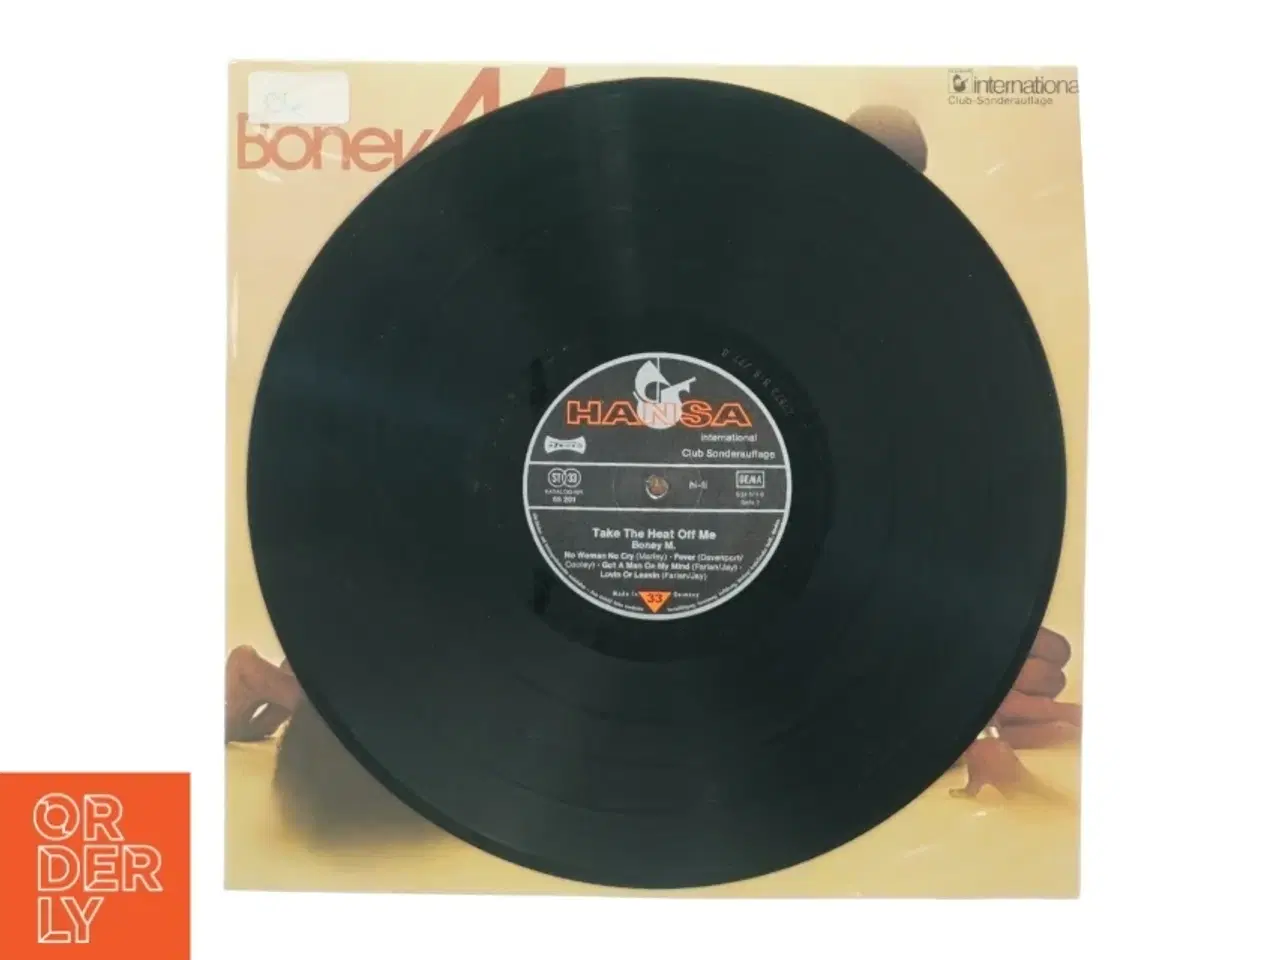 Billede 3 - Boney M - Take the heat off me (LP) fra Hansa (str. 30 cm)